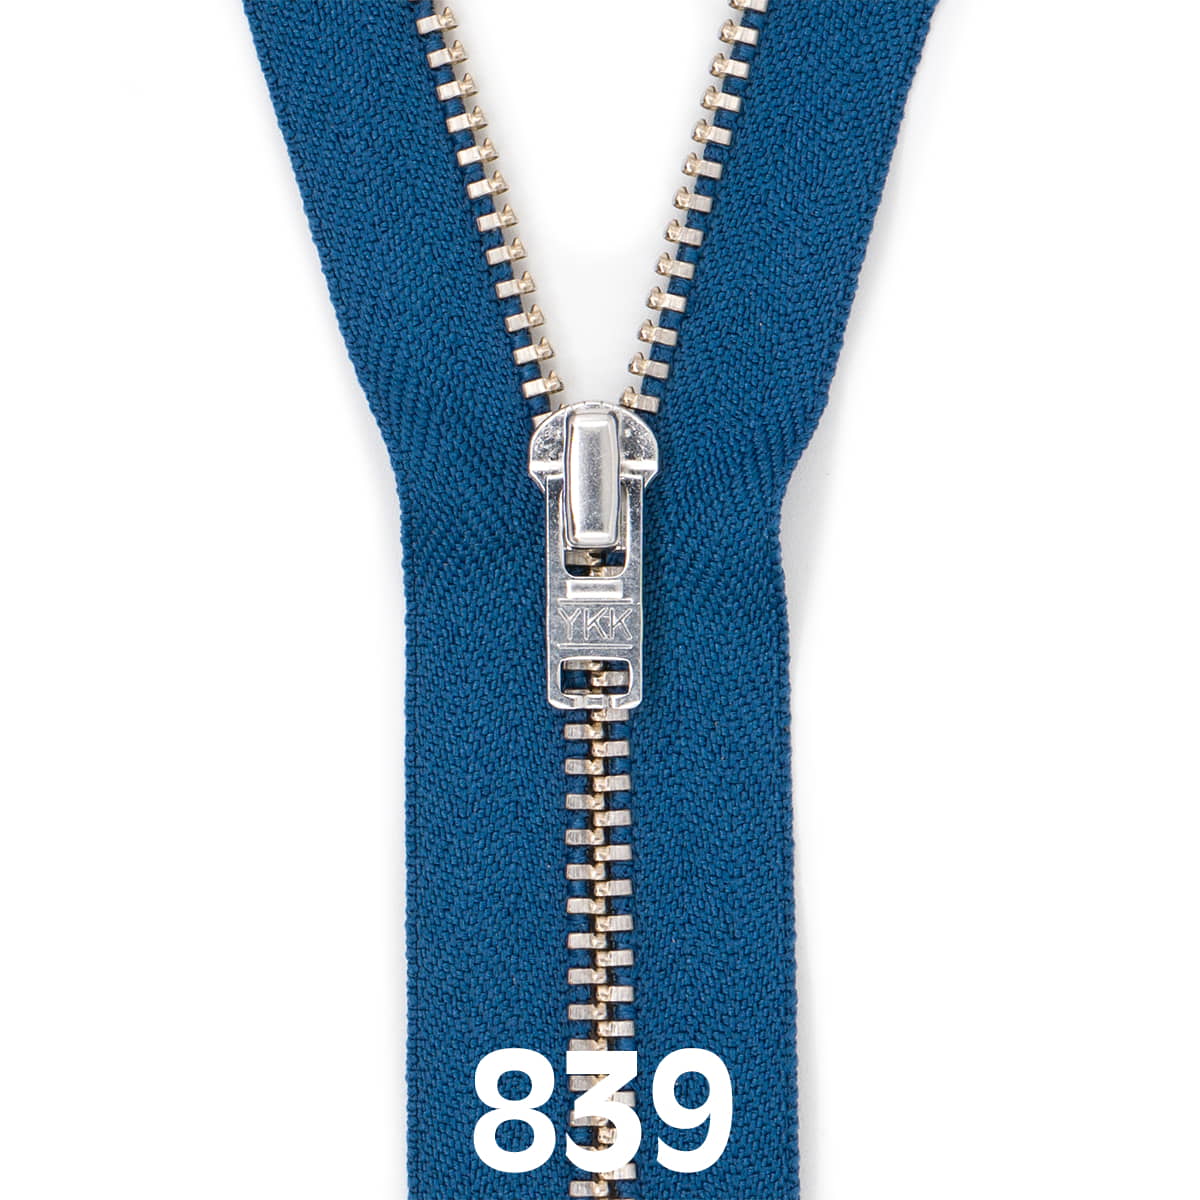 Broek rits metaal | zilver fijn | 12 cm | YKK | 839 jeans blauw Rits RITS-BROEK-SILVER-4.5-12CM-839-JEAN-BLUE - Fourniturenkraam.nl